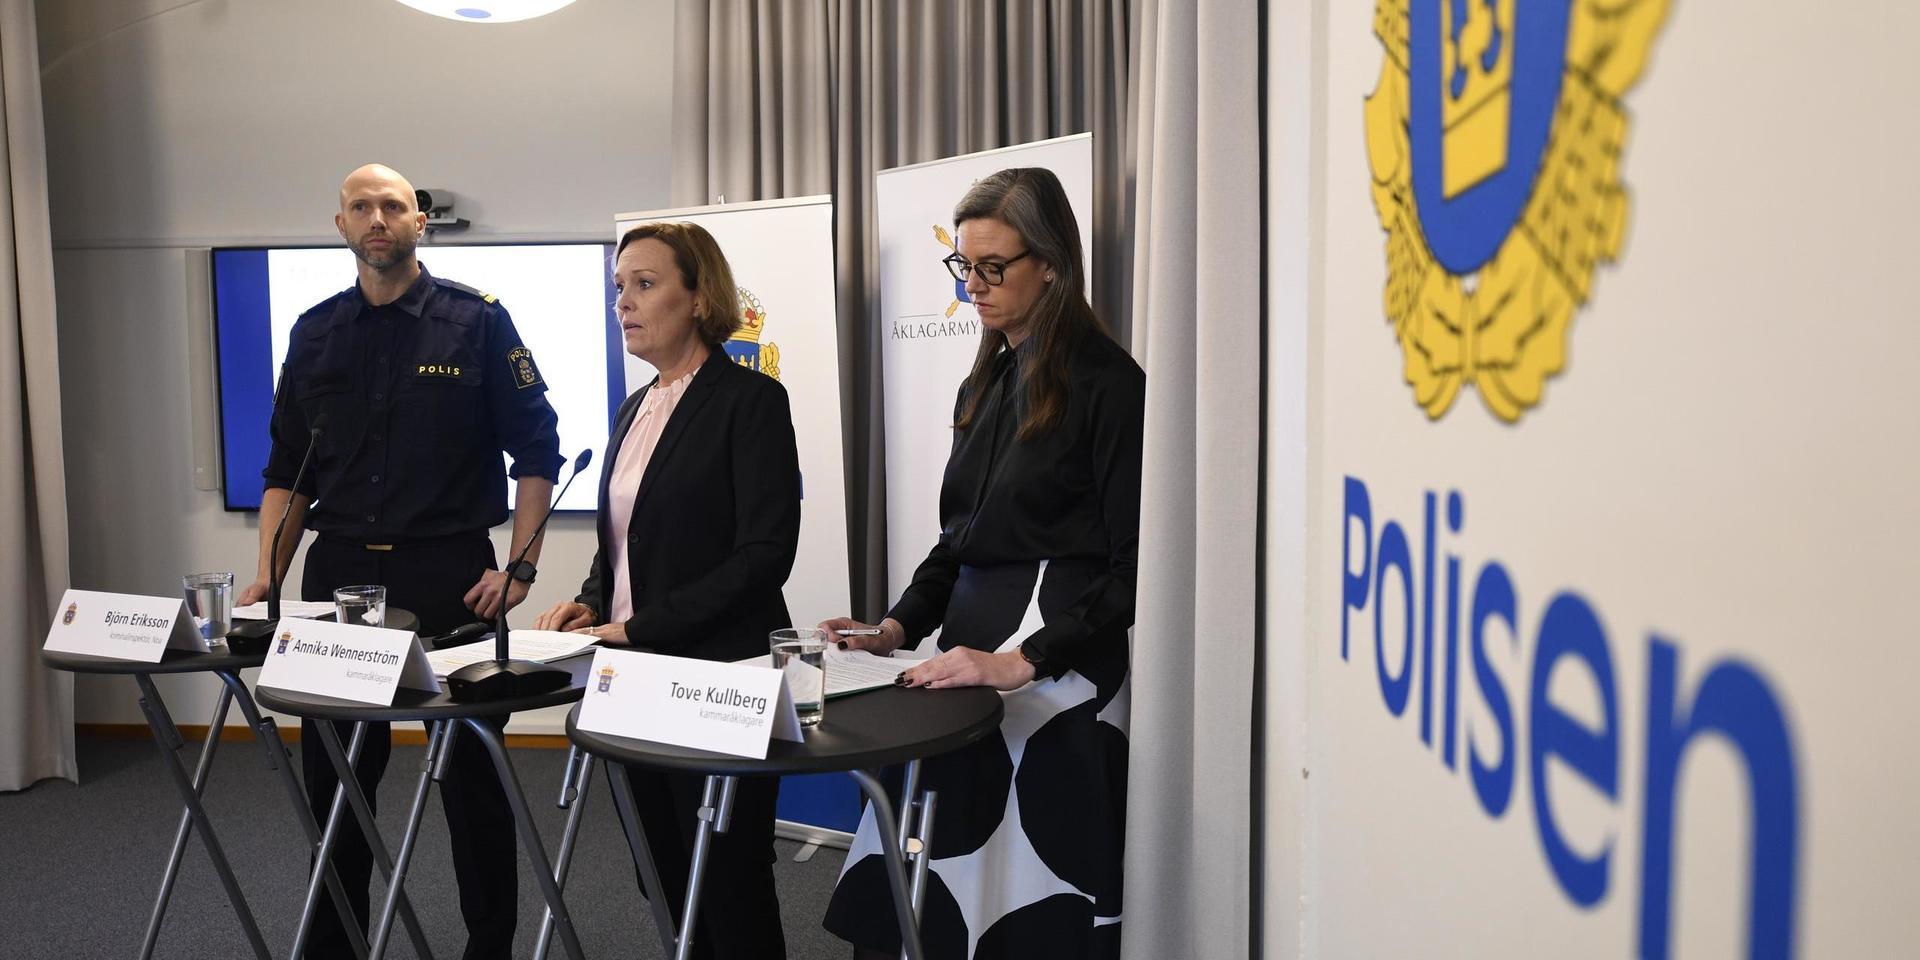 Björn Eriksson, kriminalinspektör vid nationella operativa avdelningen på polisen och åklagarna Annika Wennerström, och Tove Kullberg under en pressträff där åtalet mot 28-åringen och fyra andra personer presenterades. Arkivbild.